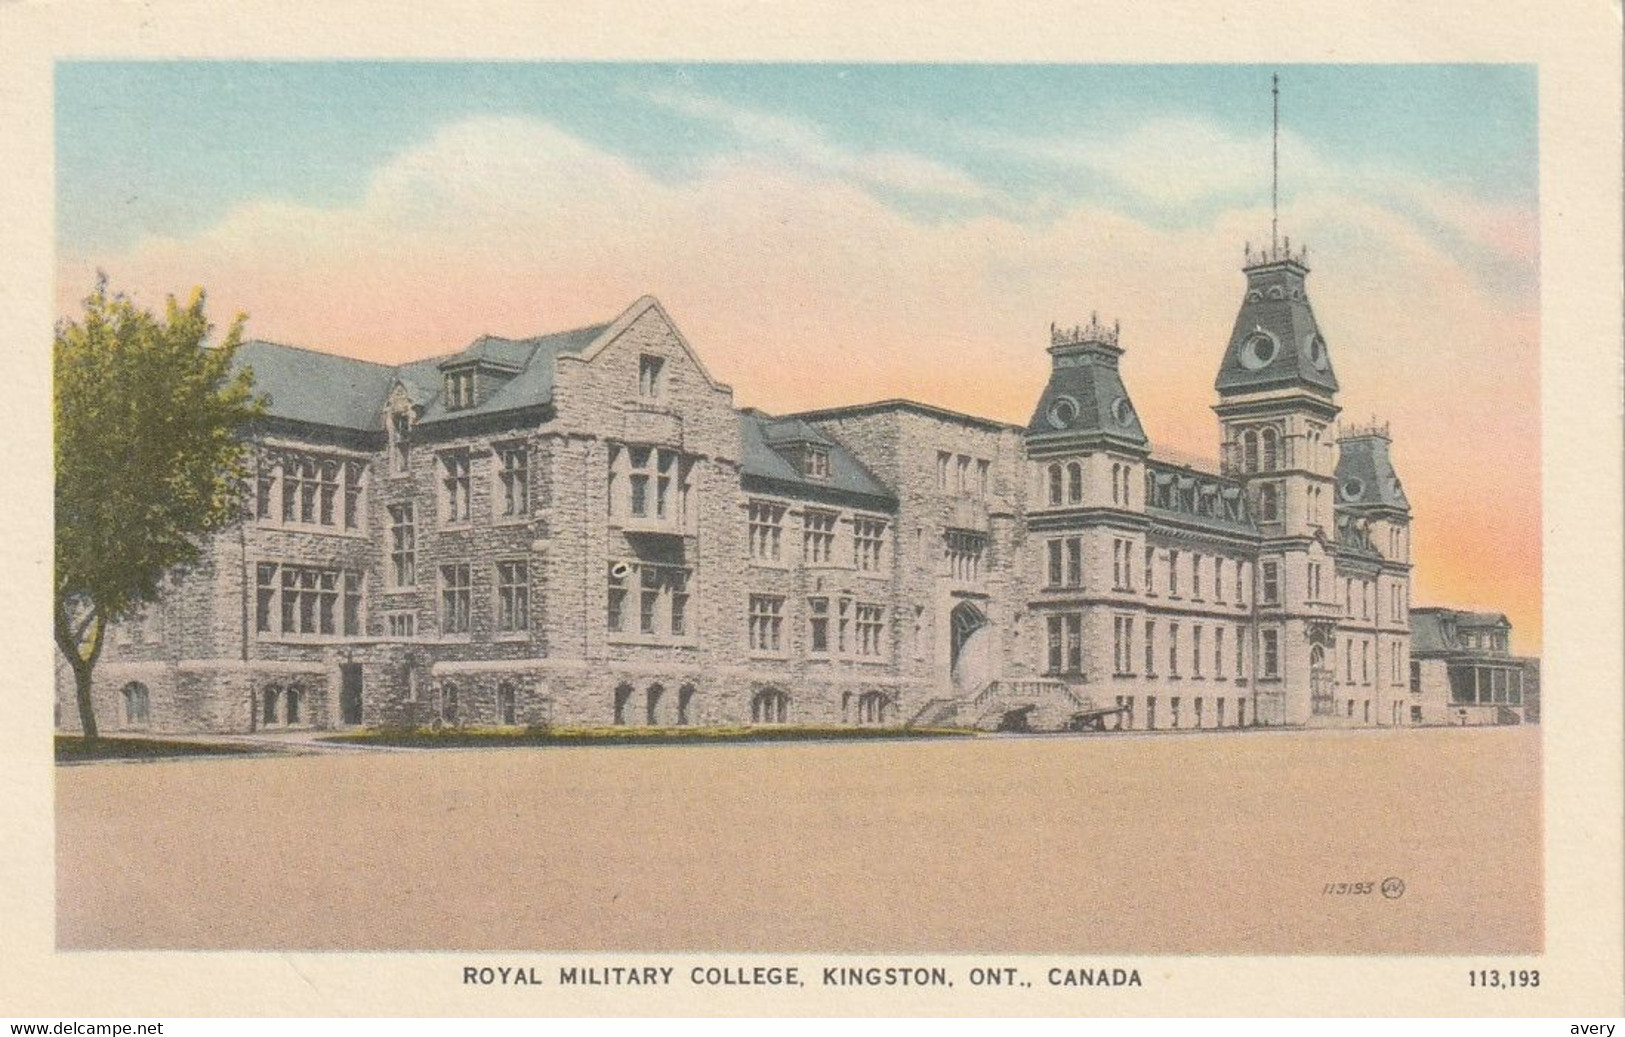 Royal Military College, Kingston, Ontario - Kingston